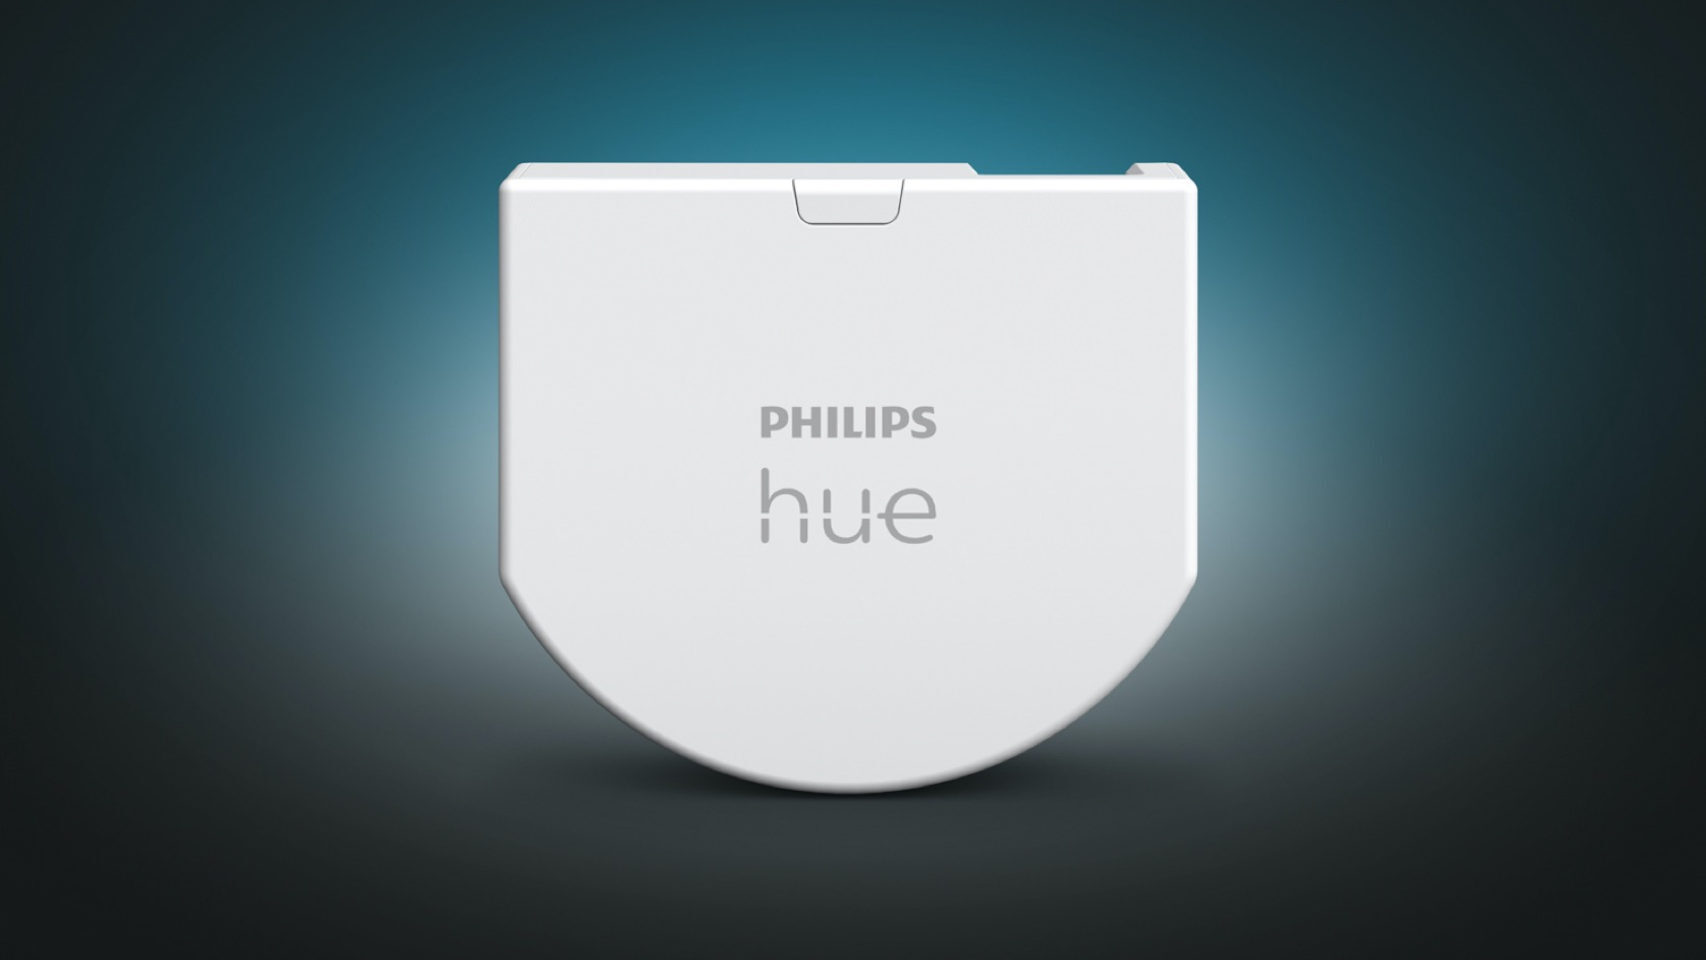 El nuevo dispositivo de Philips Hue